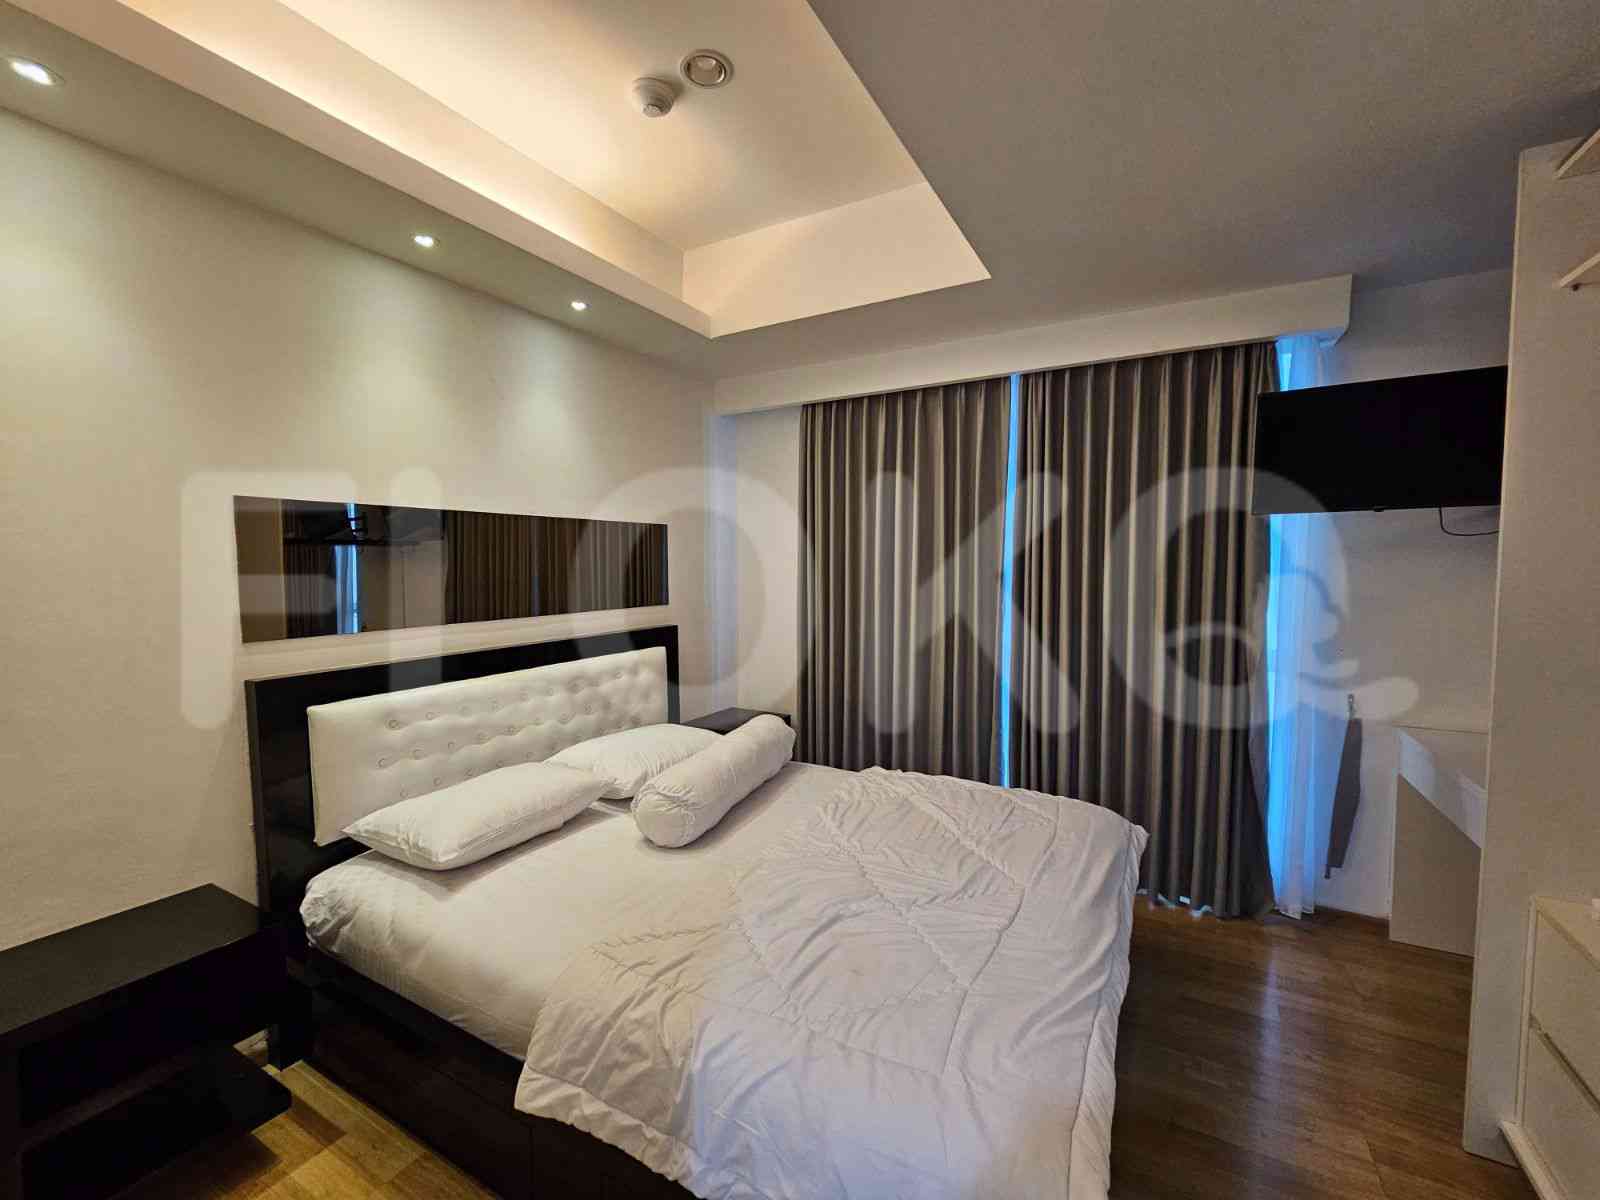 3 Bedroom on 15th Floor for Rent in Casa Grande - fte909 2